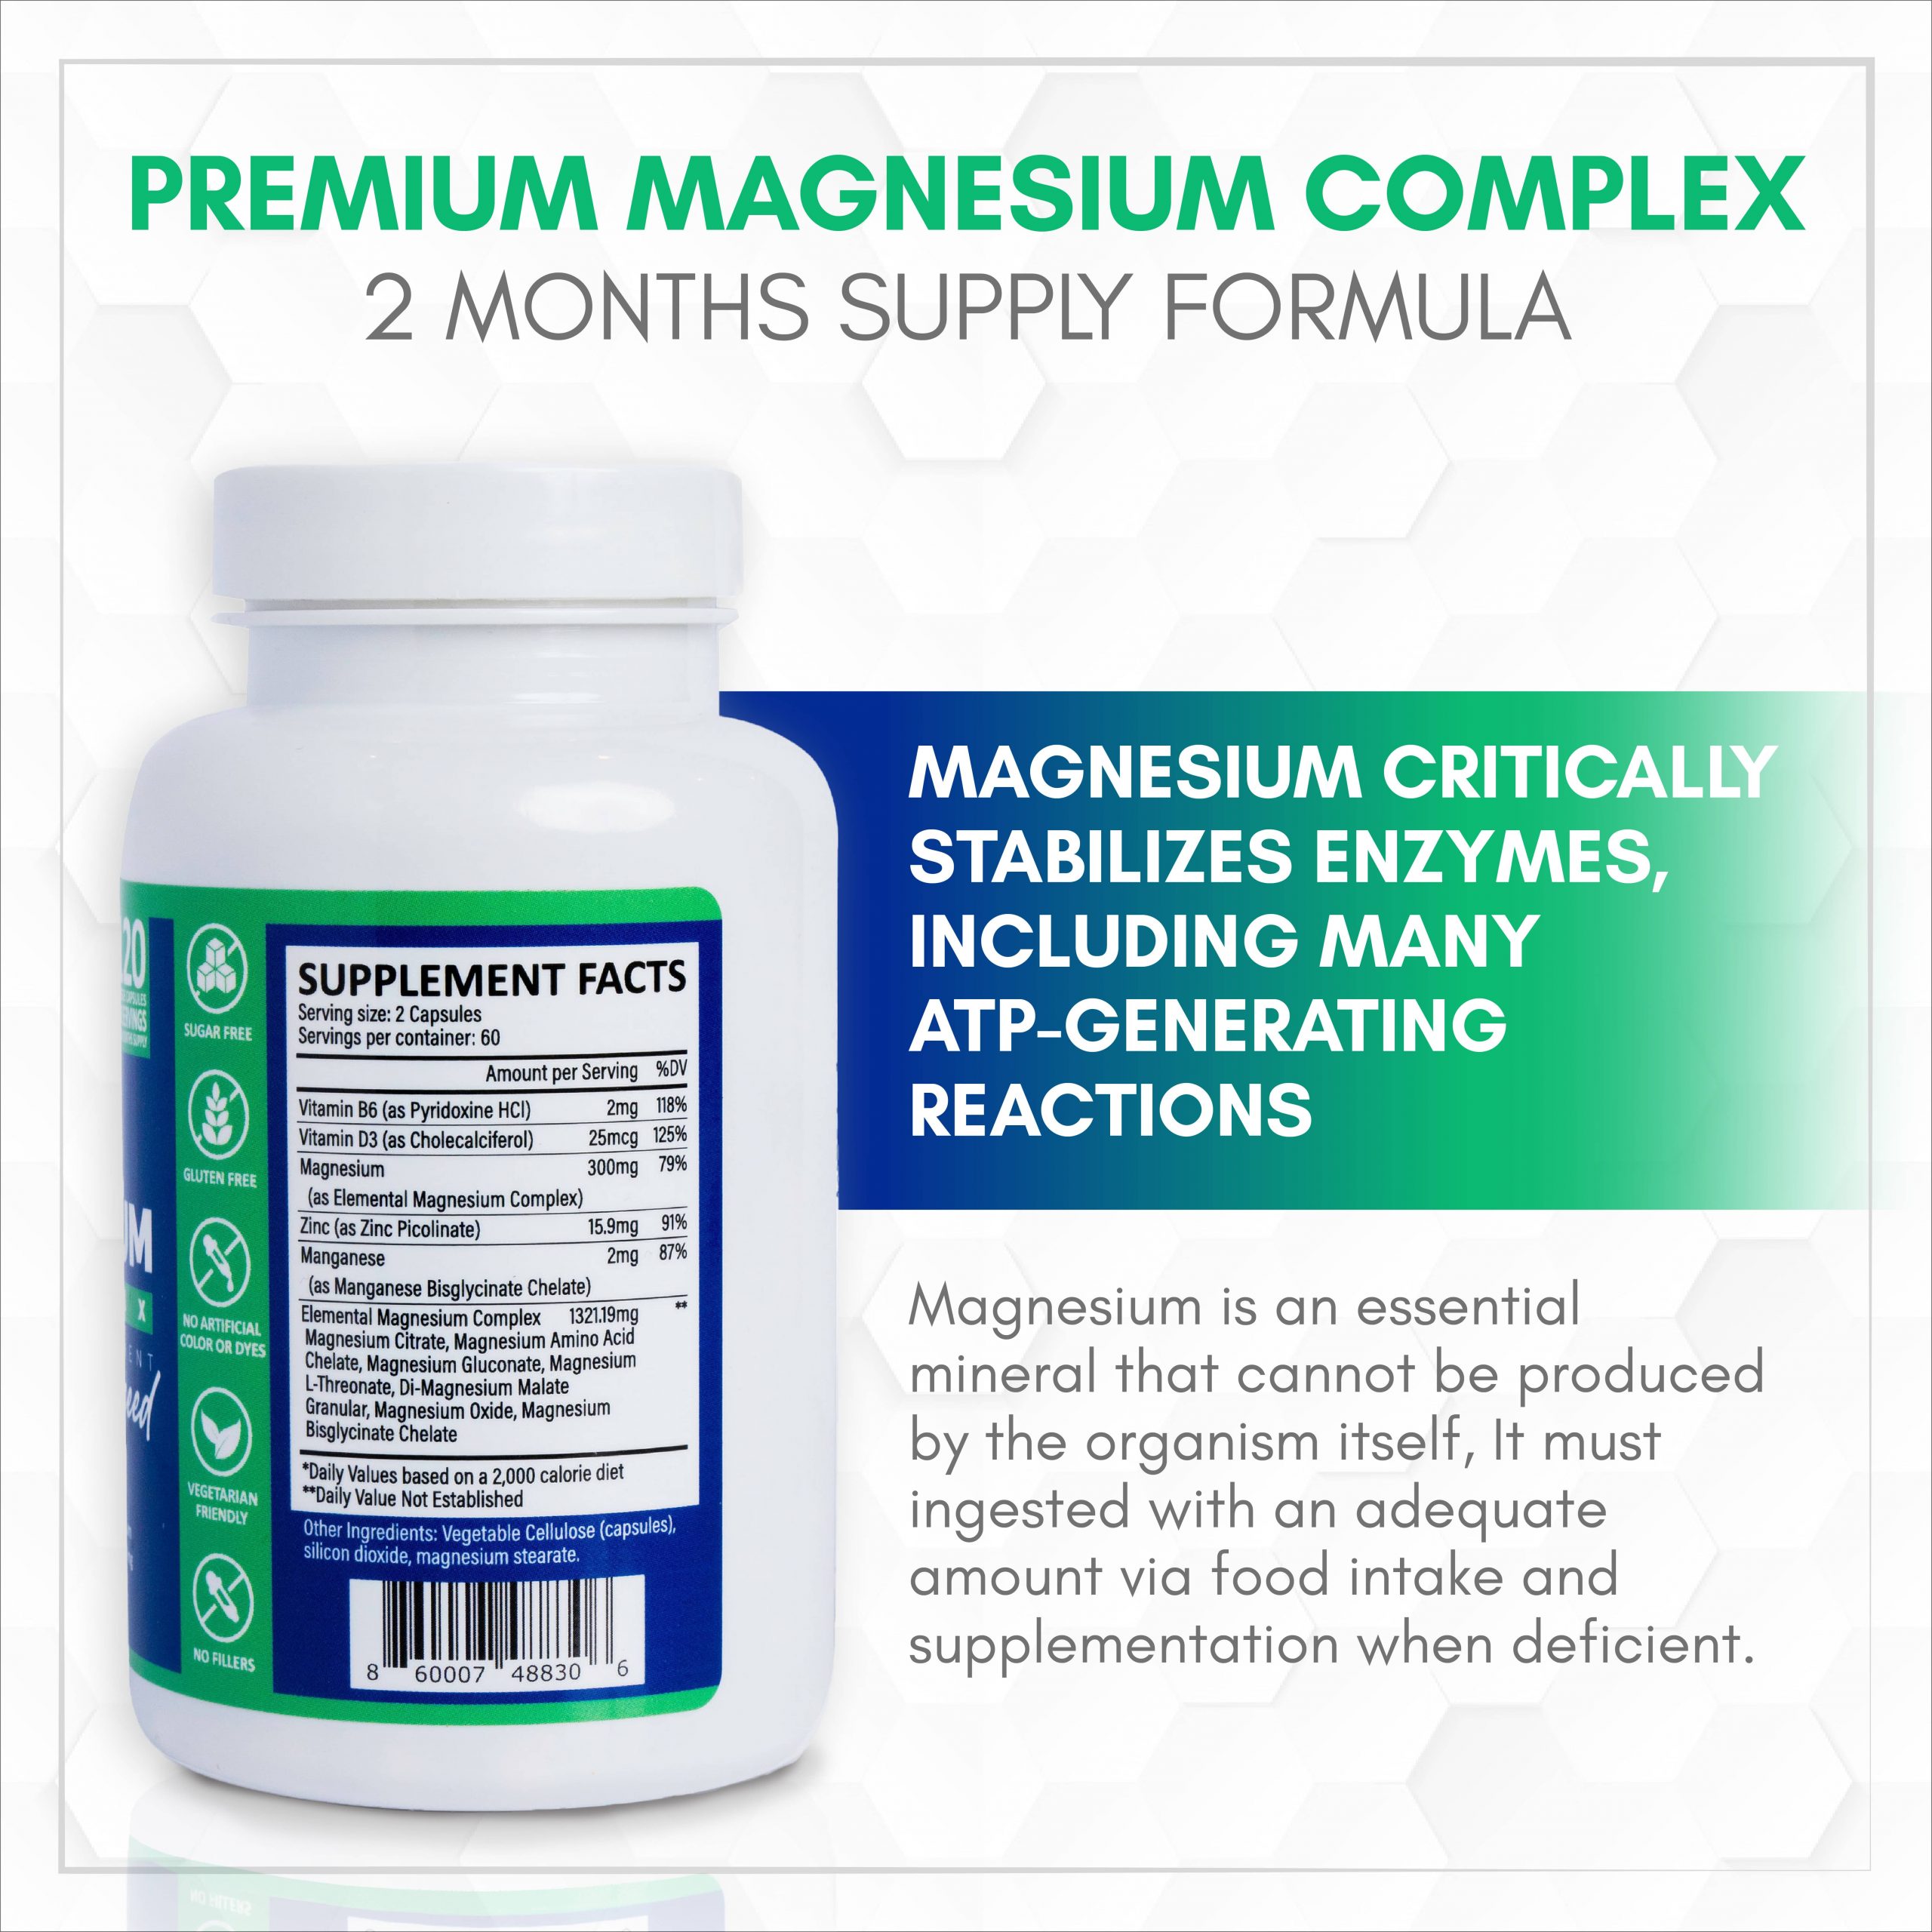 Premium Magnesium Complex 5 Final